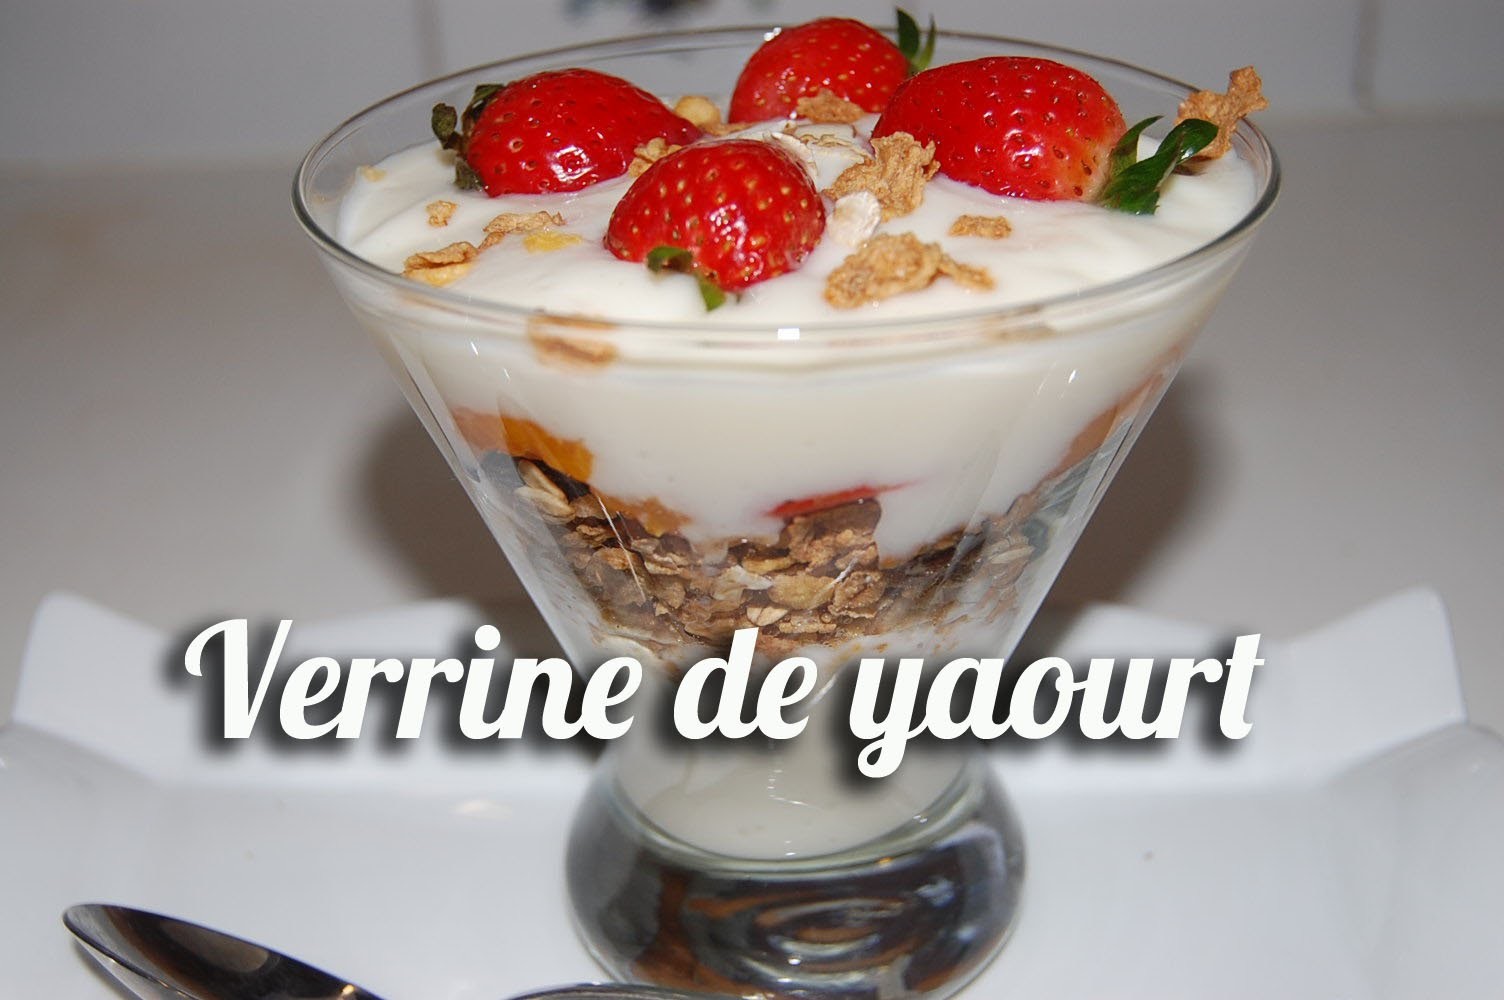 Verrine de yaourt, müslix et fruits frais